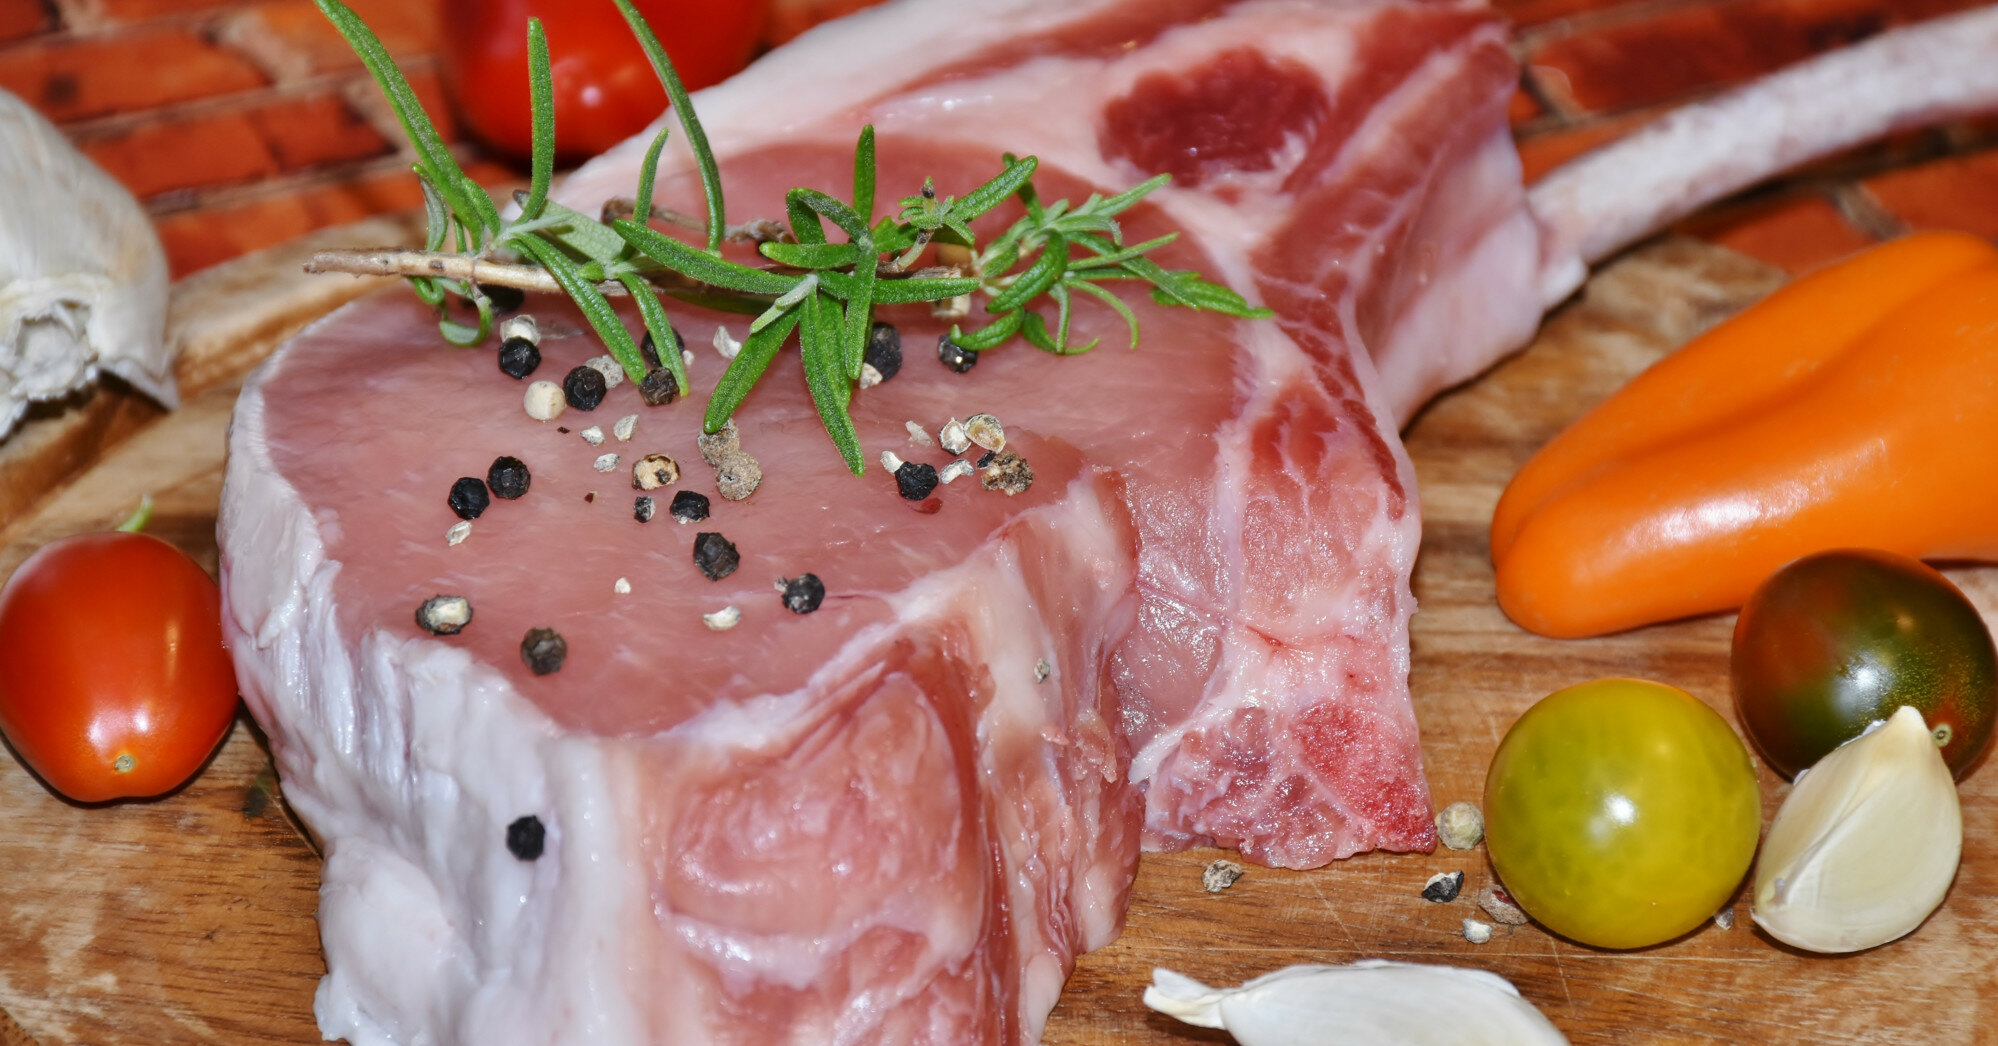 М'ясо дорожчає: закупівельні ціни на свиней повзуть угору